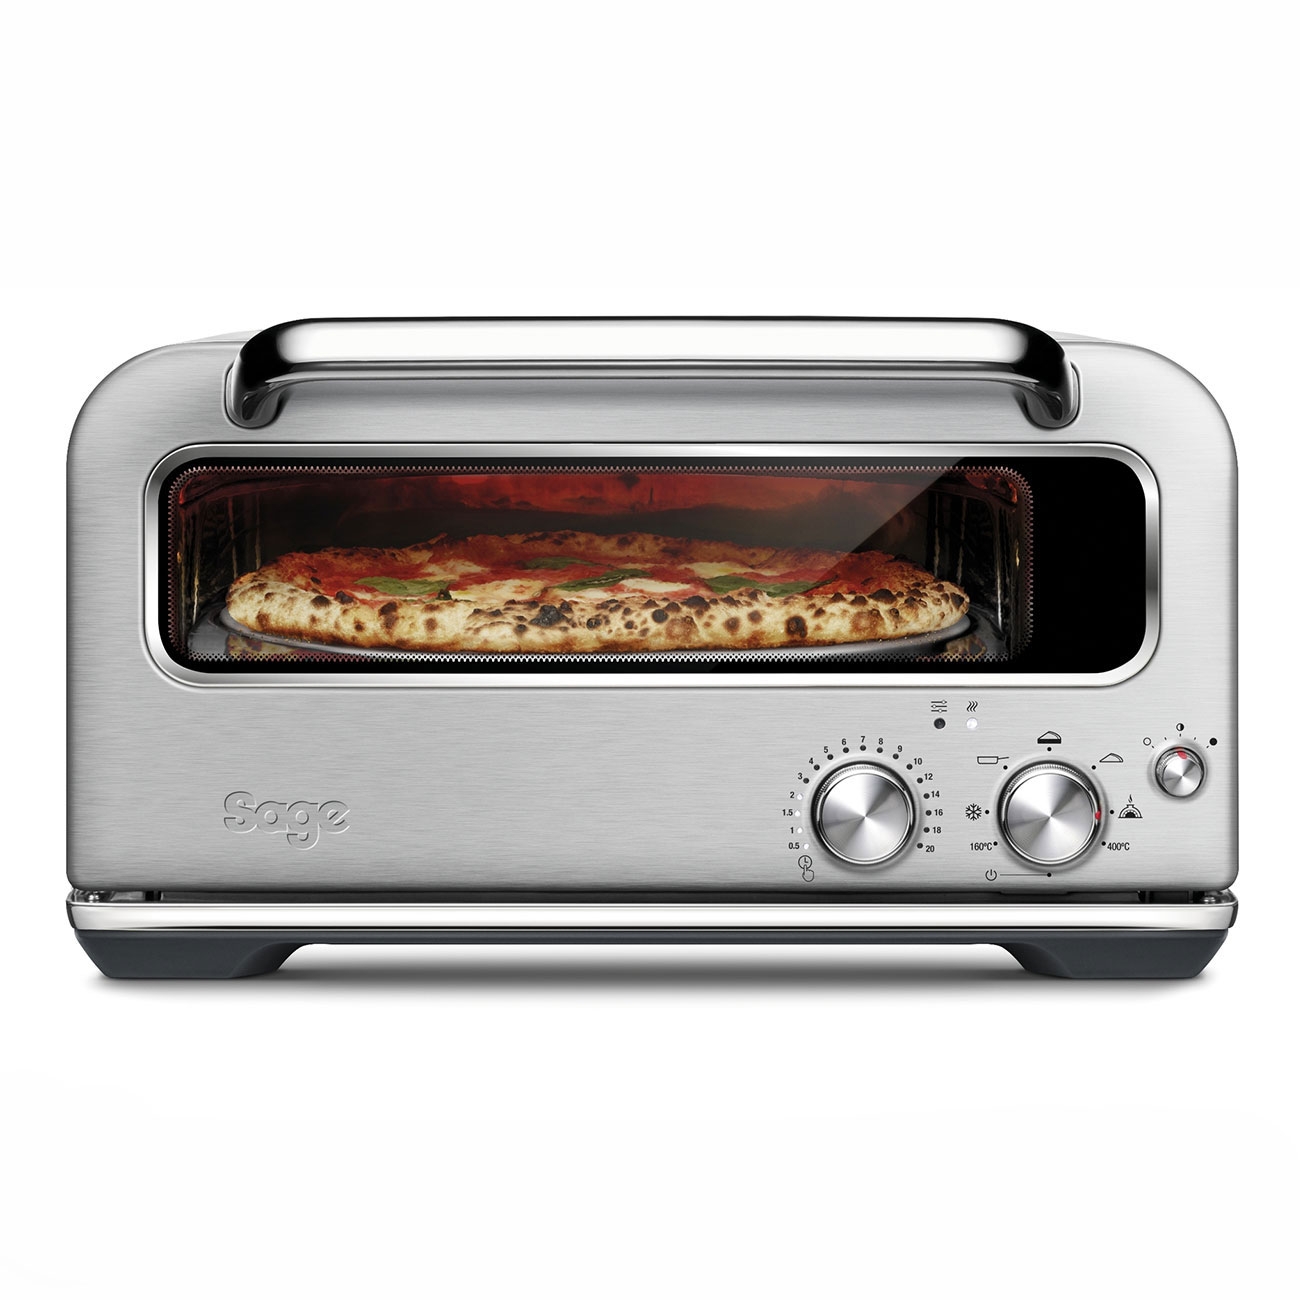 the Smart Oven™ Pizzaiolo